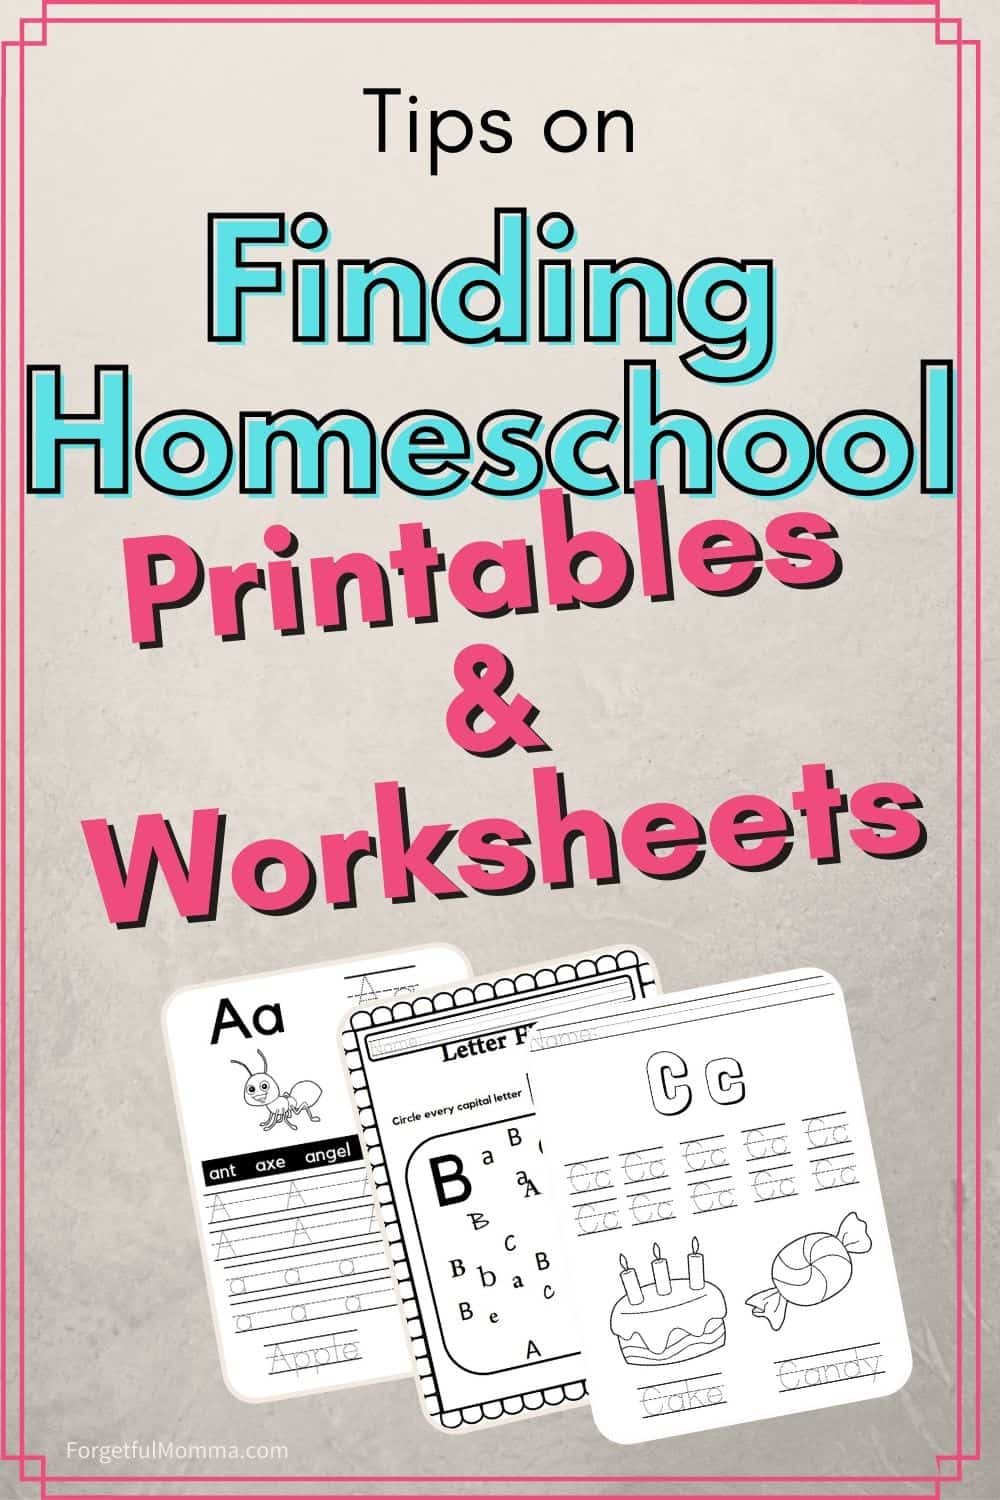 Finding Homeschool Printables & Worksheets